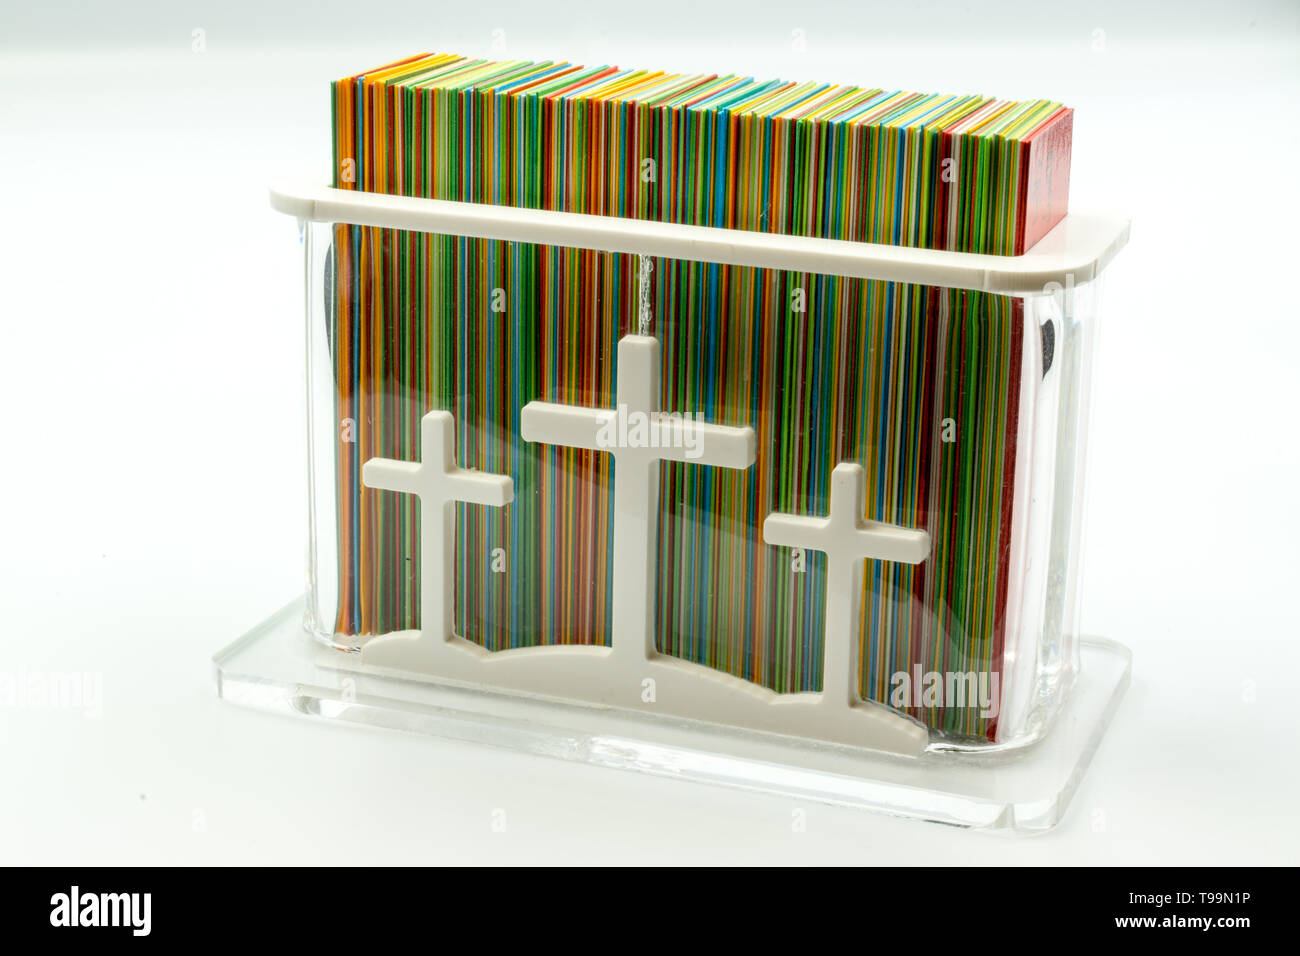 C'est une capture d'une boîte rectangulaire en verre avec une couleur multi cartes priant la photo a été prise dans un fond blanc et un studio light Banque D'Images